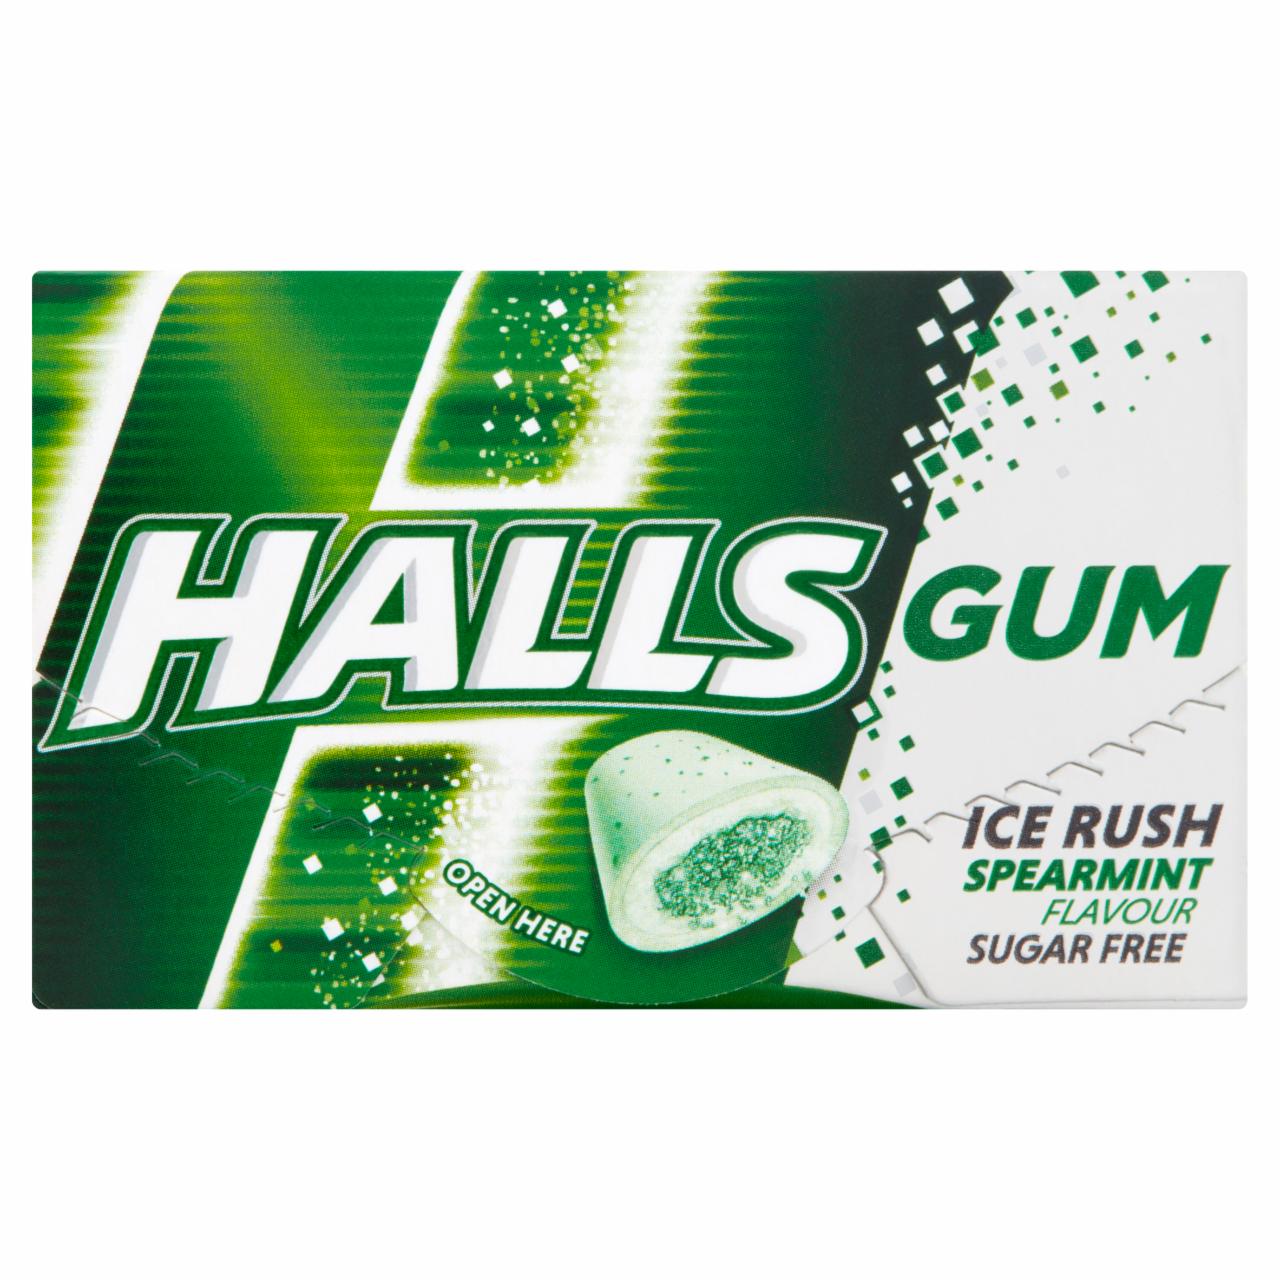 Zdjęcia - Halls Gum Ice Rush Bezcukrowa guma do żucia o smaku miętowym 18 g